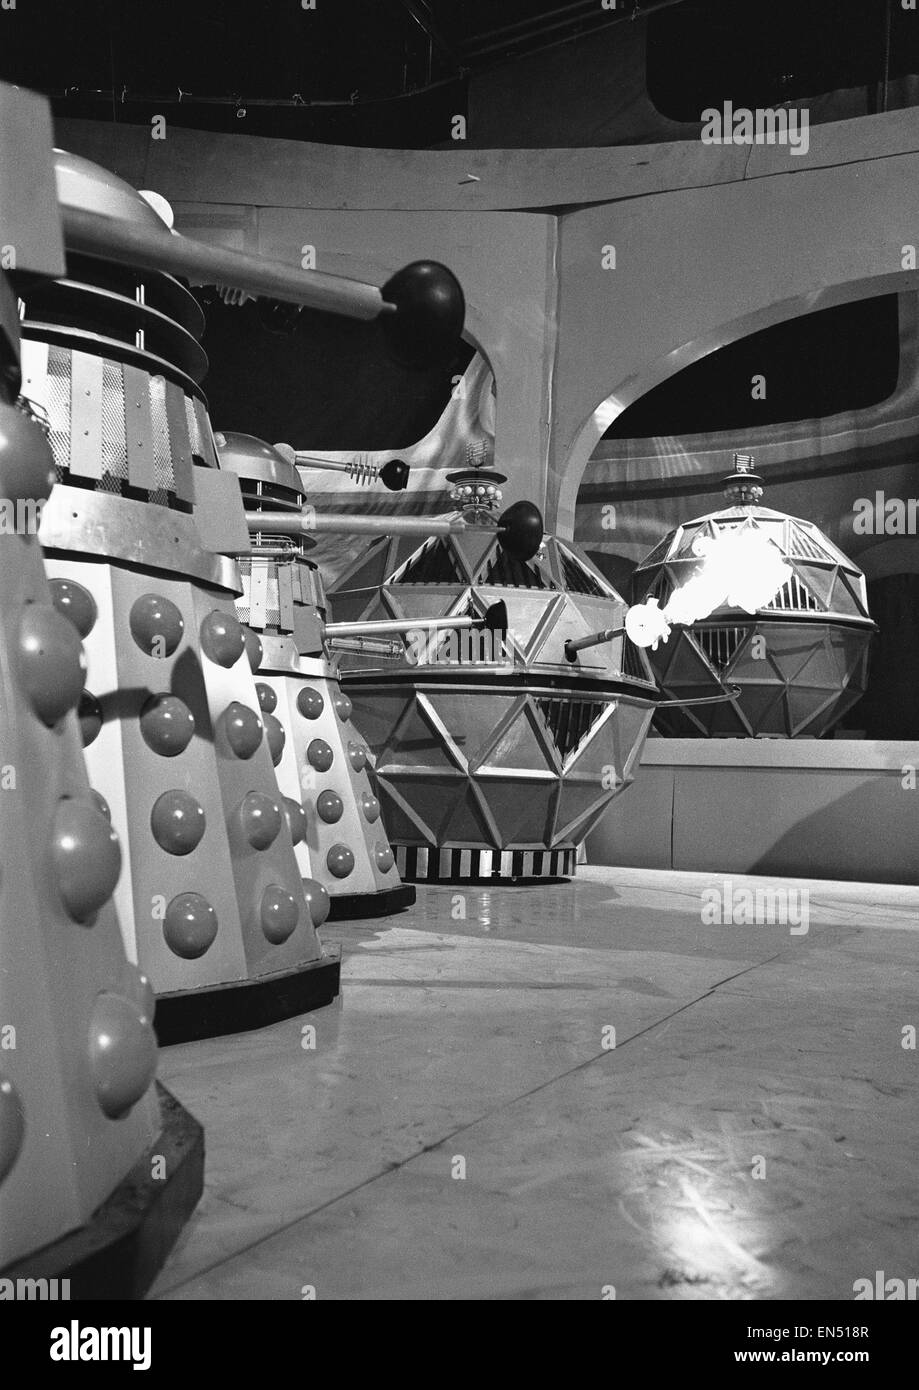 Eine Szene aus der Dr Who-Fernsehserie, die Geschichte heißt "The Chase" der Szene zeigen eine Konfrontation zwischen der Mechanoiden große kugelförmige Roboter erbaut durch den Menschen um zu helfen, Welten und ihre Erzfeinde der Daleks zu kolonisieren. Die confrontati Stockfoto